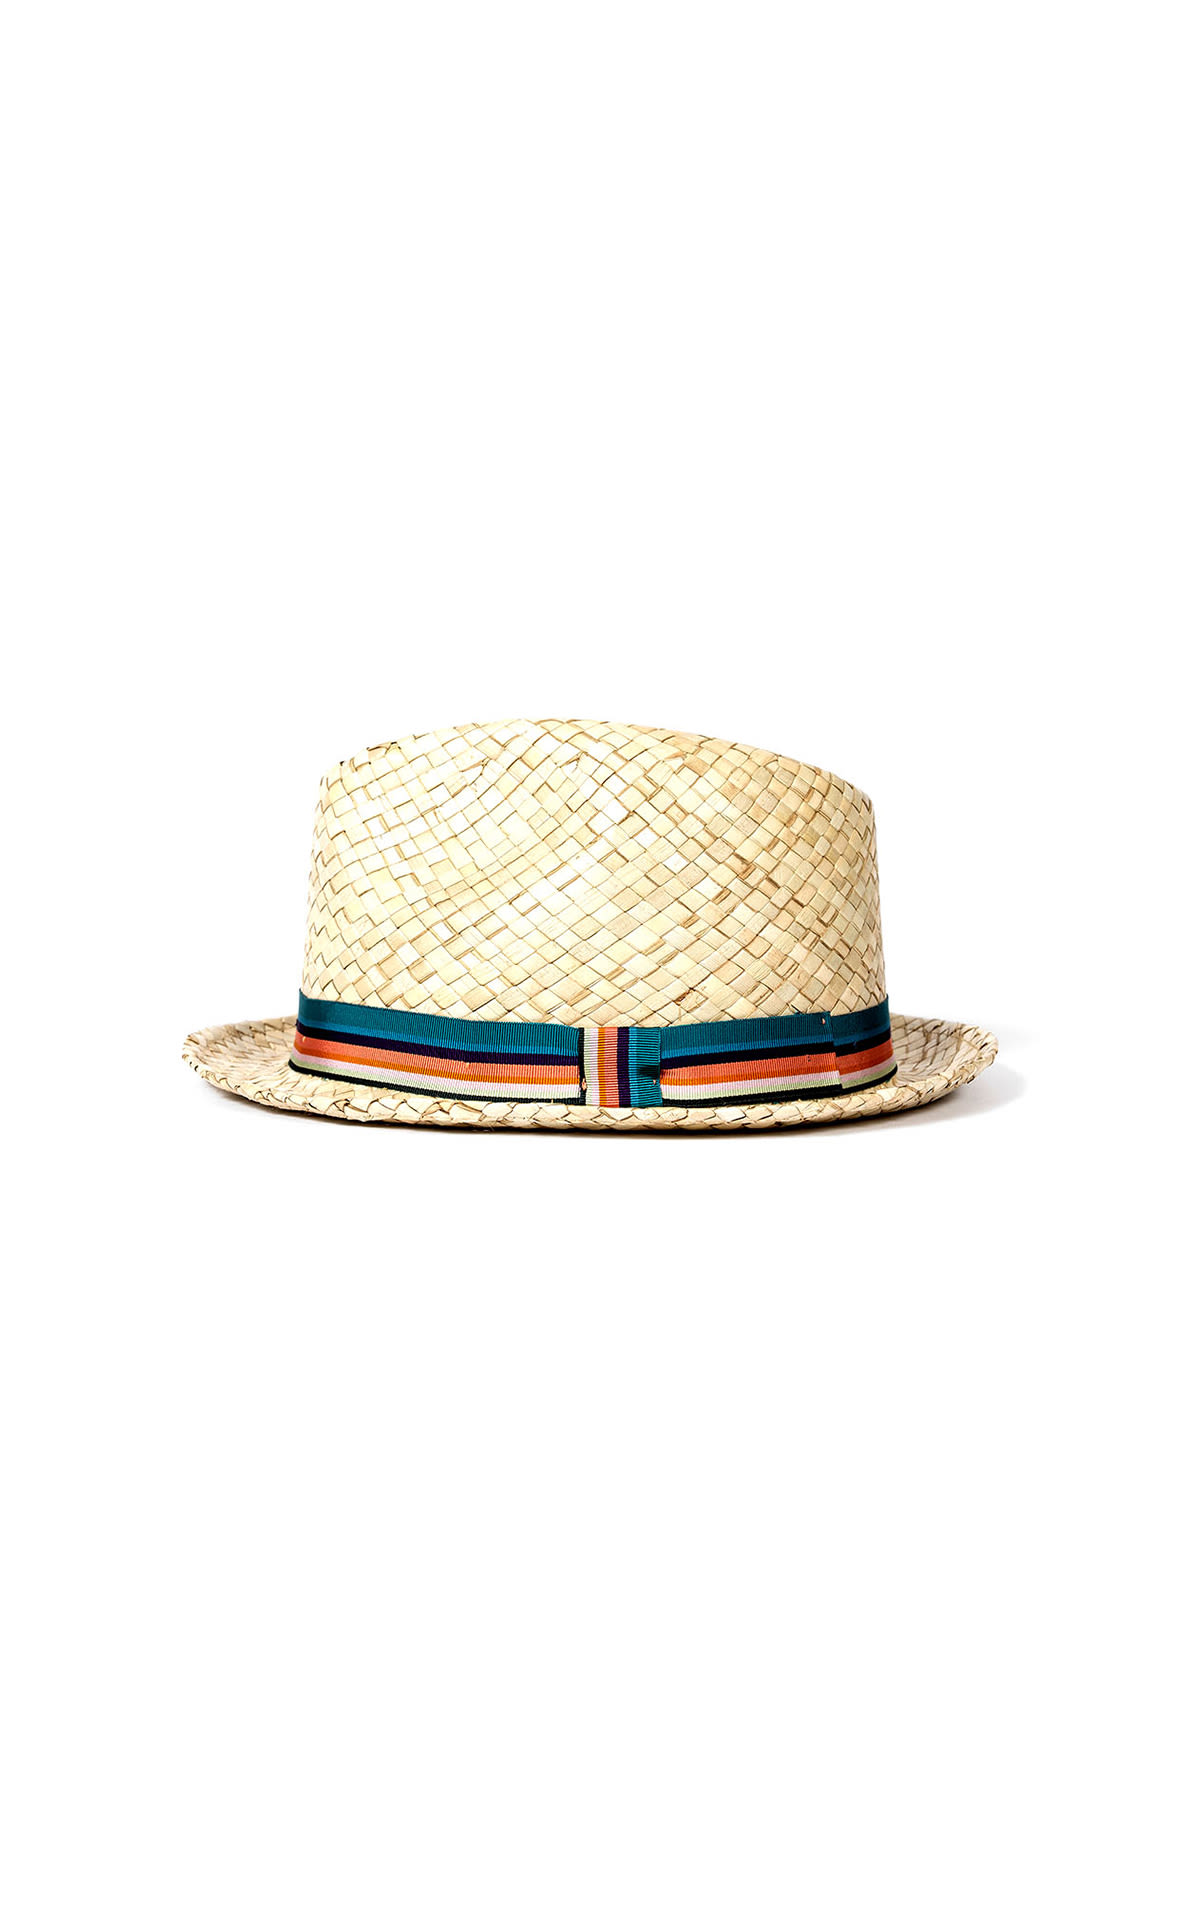 Beige straw hat